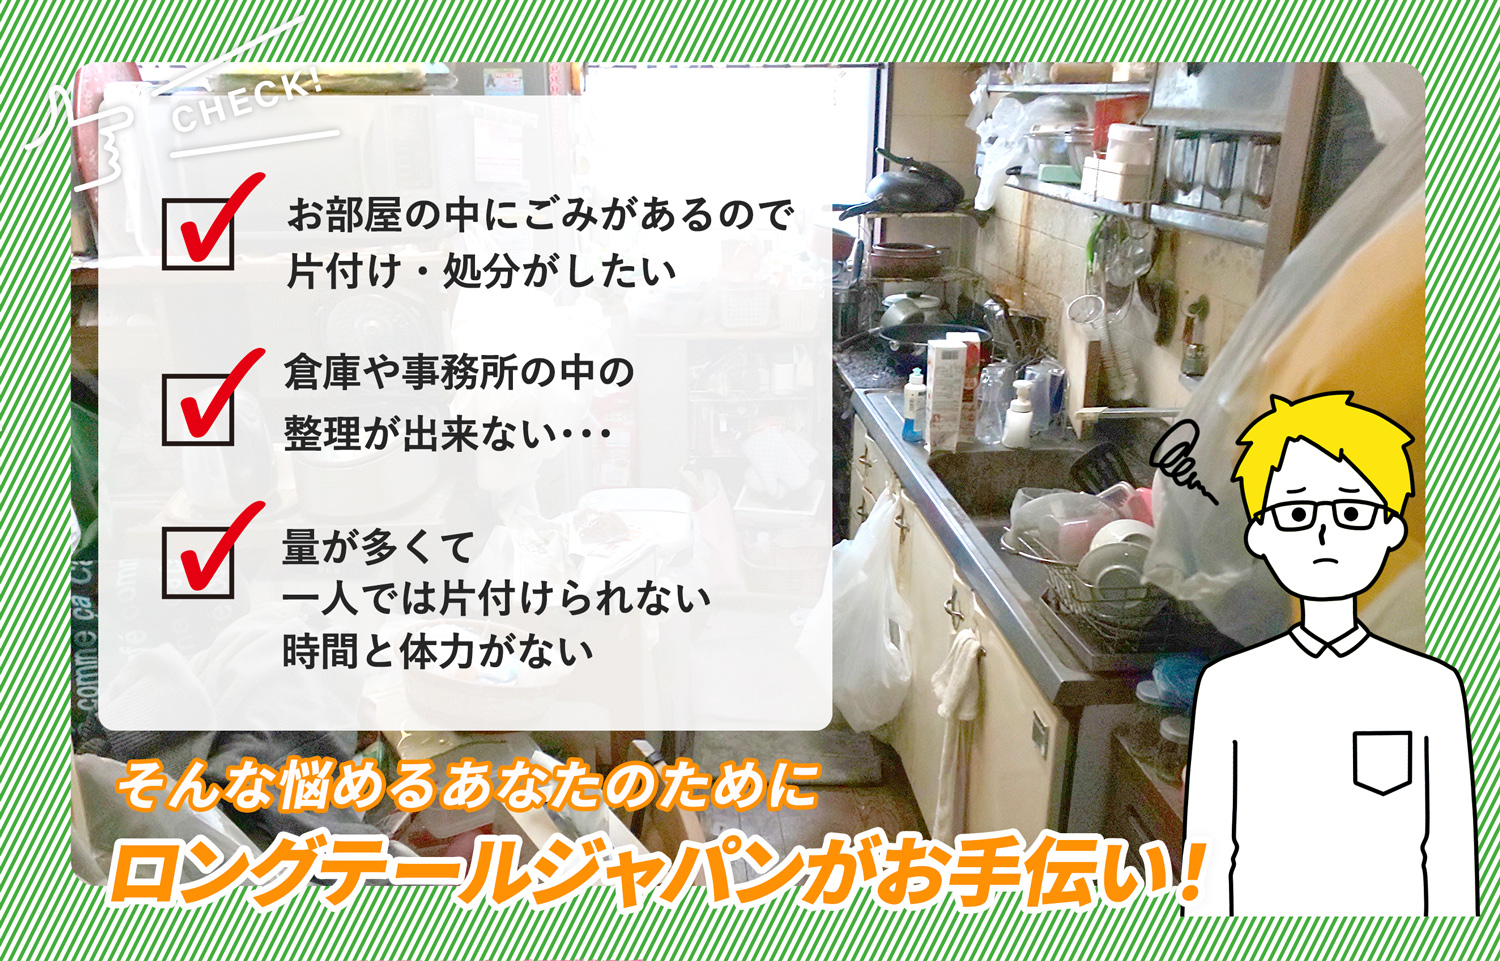 静岡県でお部屋の中から店舗、事務所、倉庫まで自分達で片付けられない場合はお部屋の片付け隊がやらせていただきます。